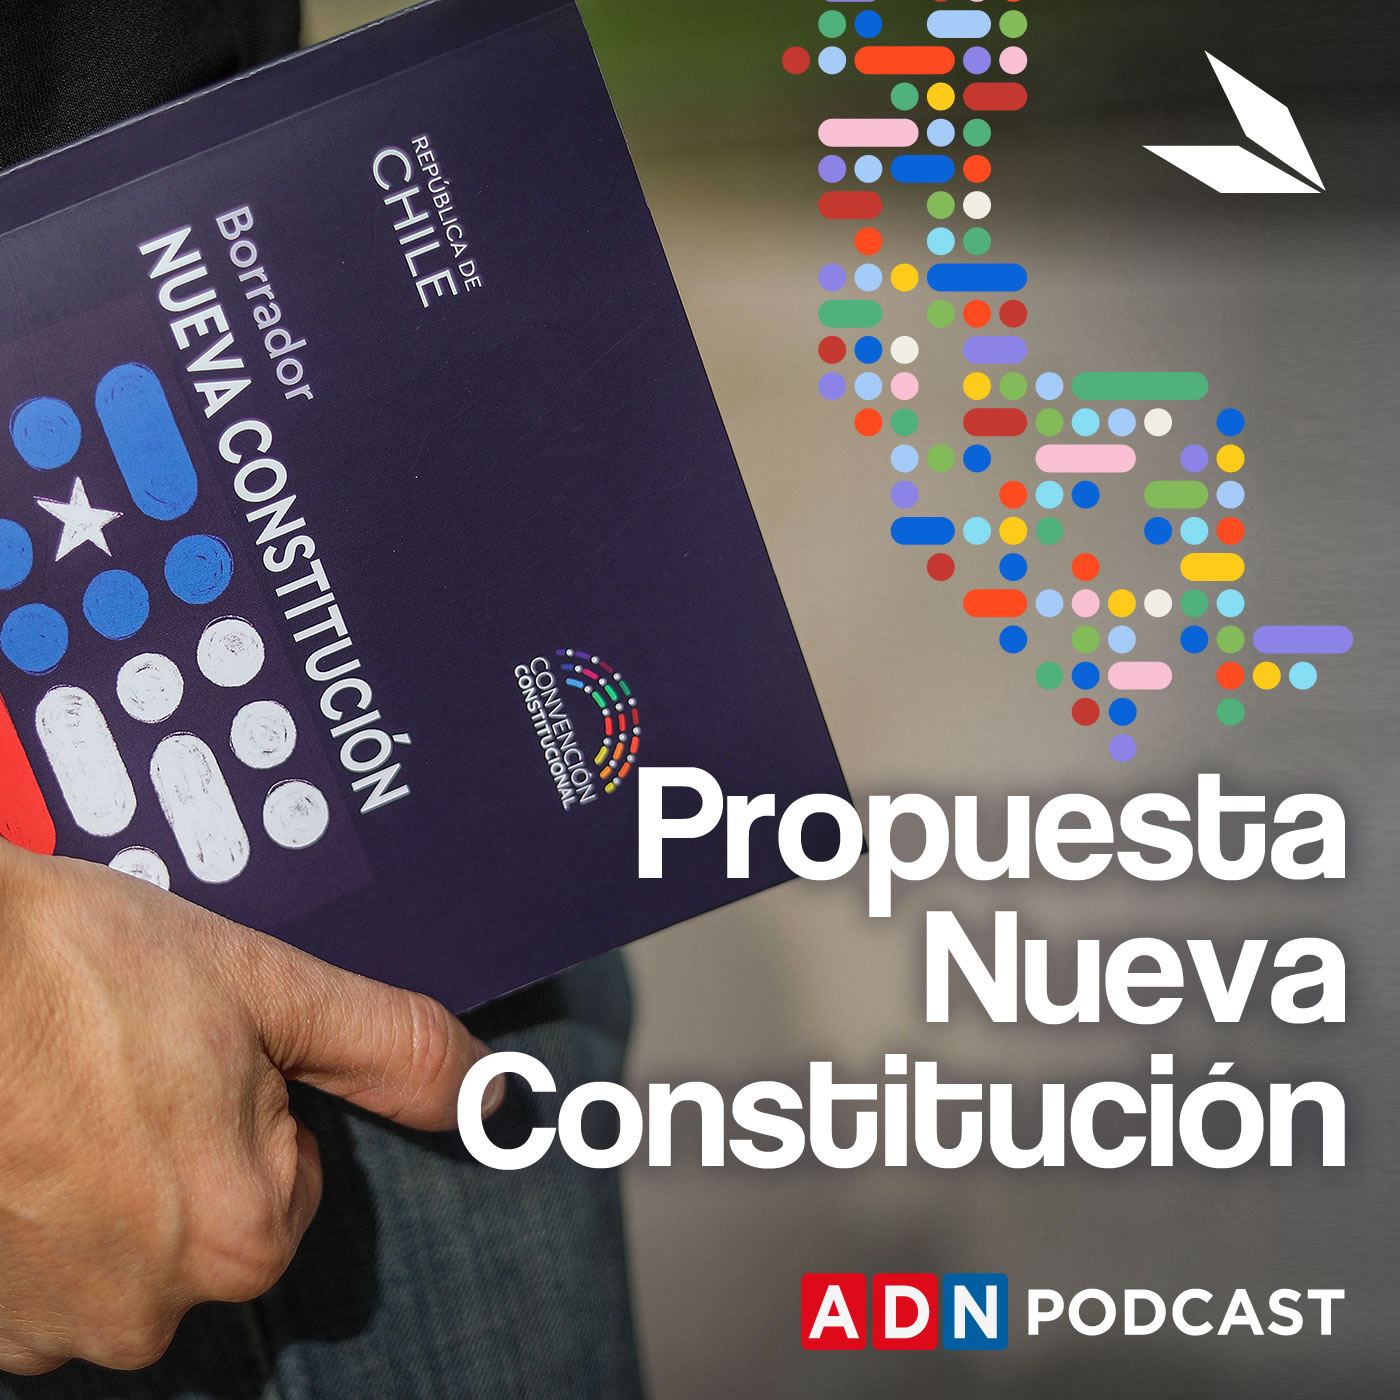 Imagen de Propuesta Nueva Constitución